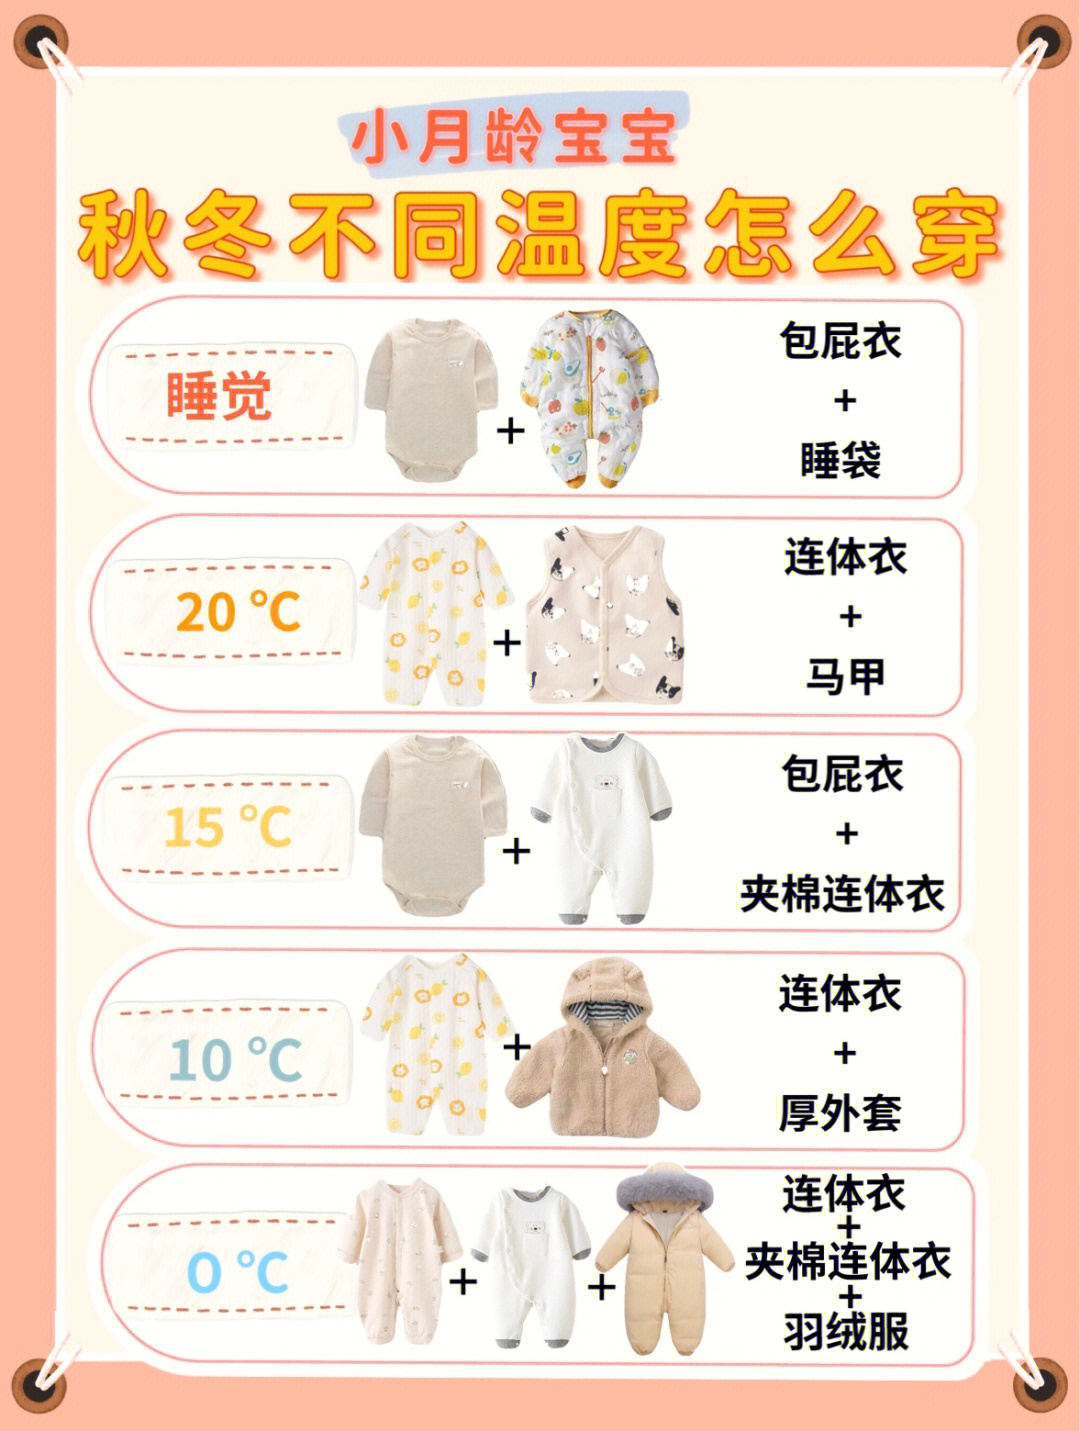 婴儿穿衣温度对照表图片